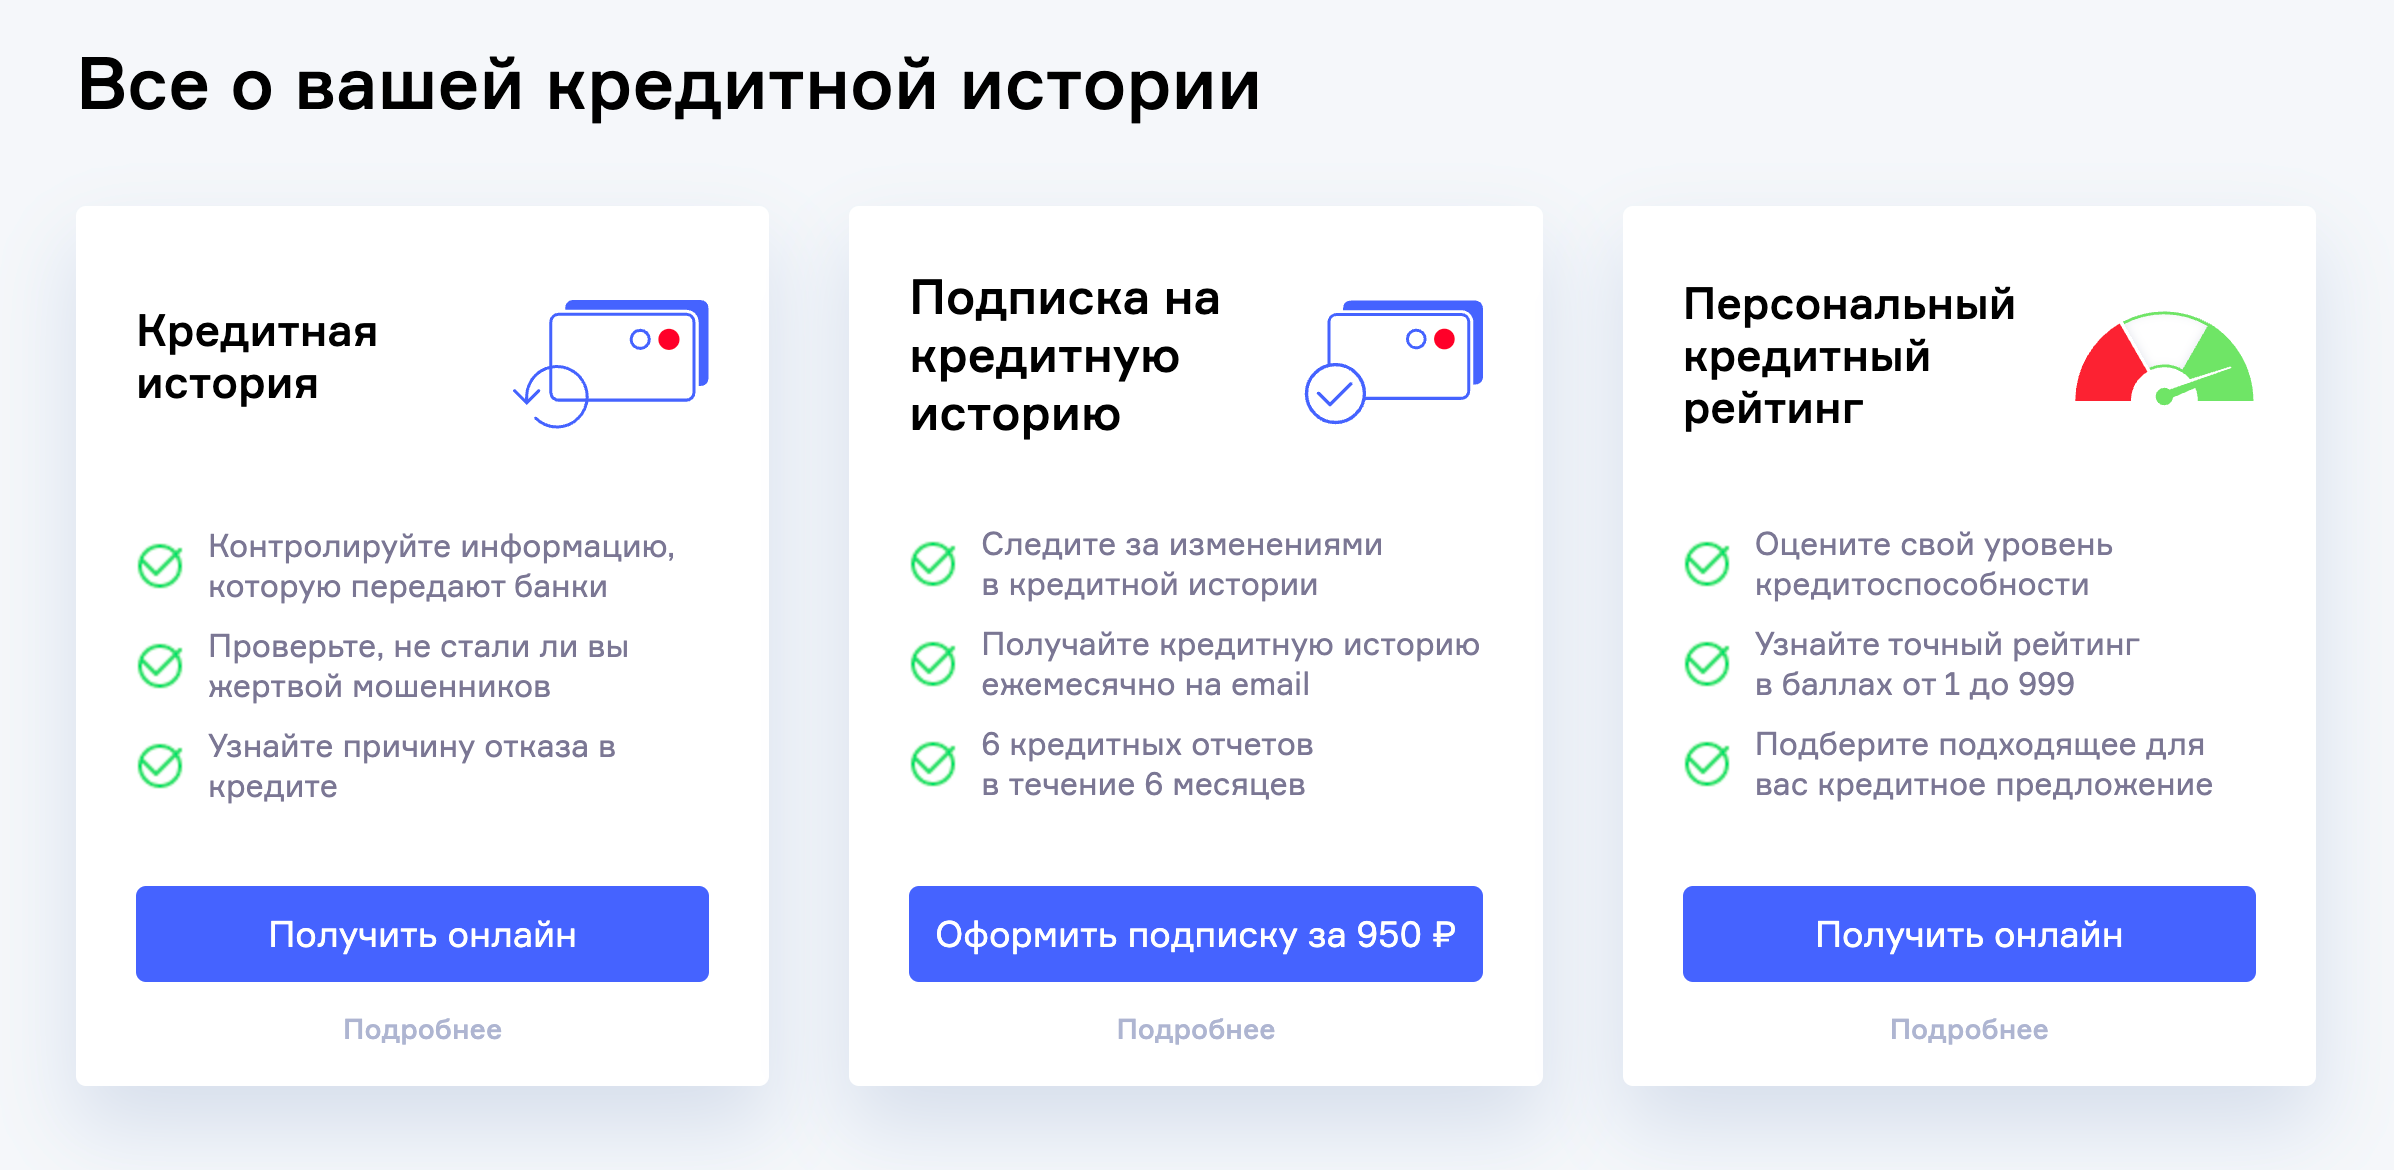 В этом бюро проверяем кредитную историю, если не было никаких кредитов в Сбербанке. Источник: nbki.ru